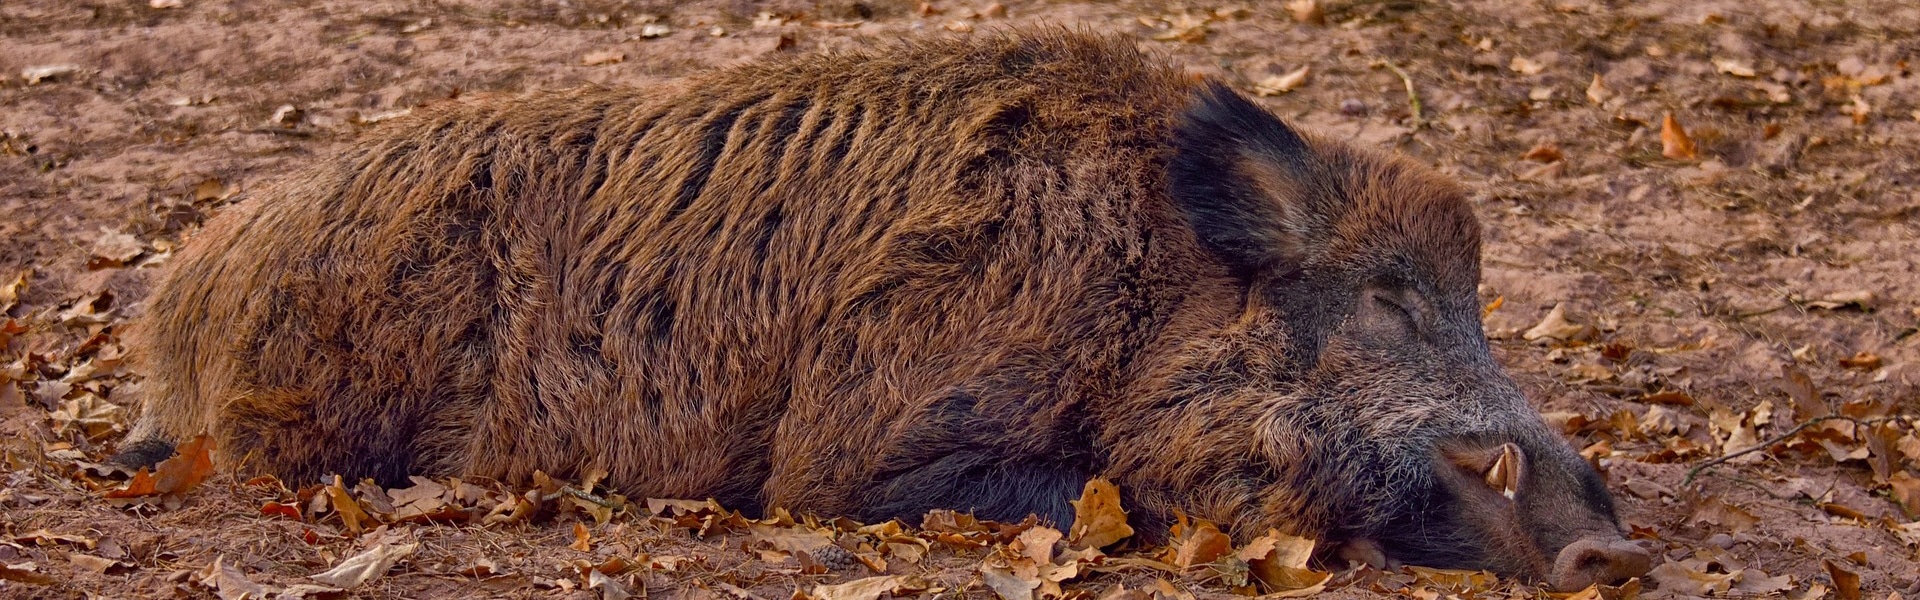 A wild boar sleeping on the floor